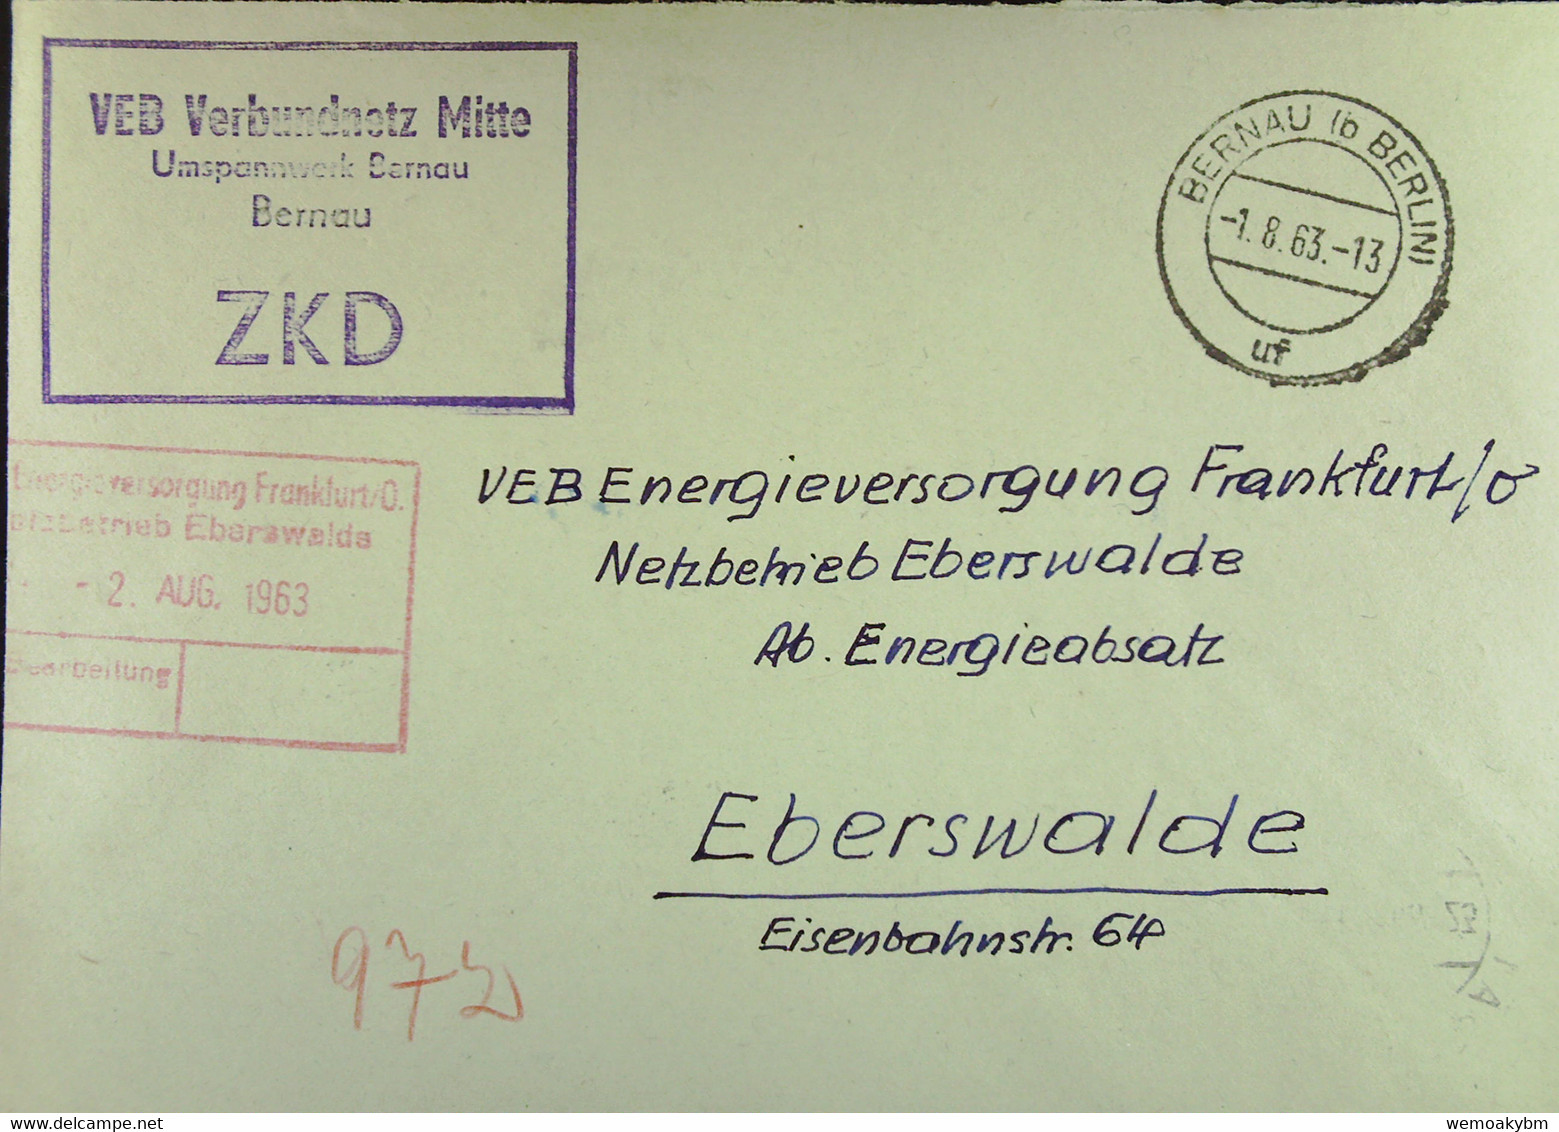 Fern-Brief Mit ZKD-Kastenst "VEB Verbundnetz Mitte Umspannwerk Bernau" 1.8.63 An VEB EV Eberswalde Mit Rotem Eing-St - Briefe U. Dokumente